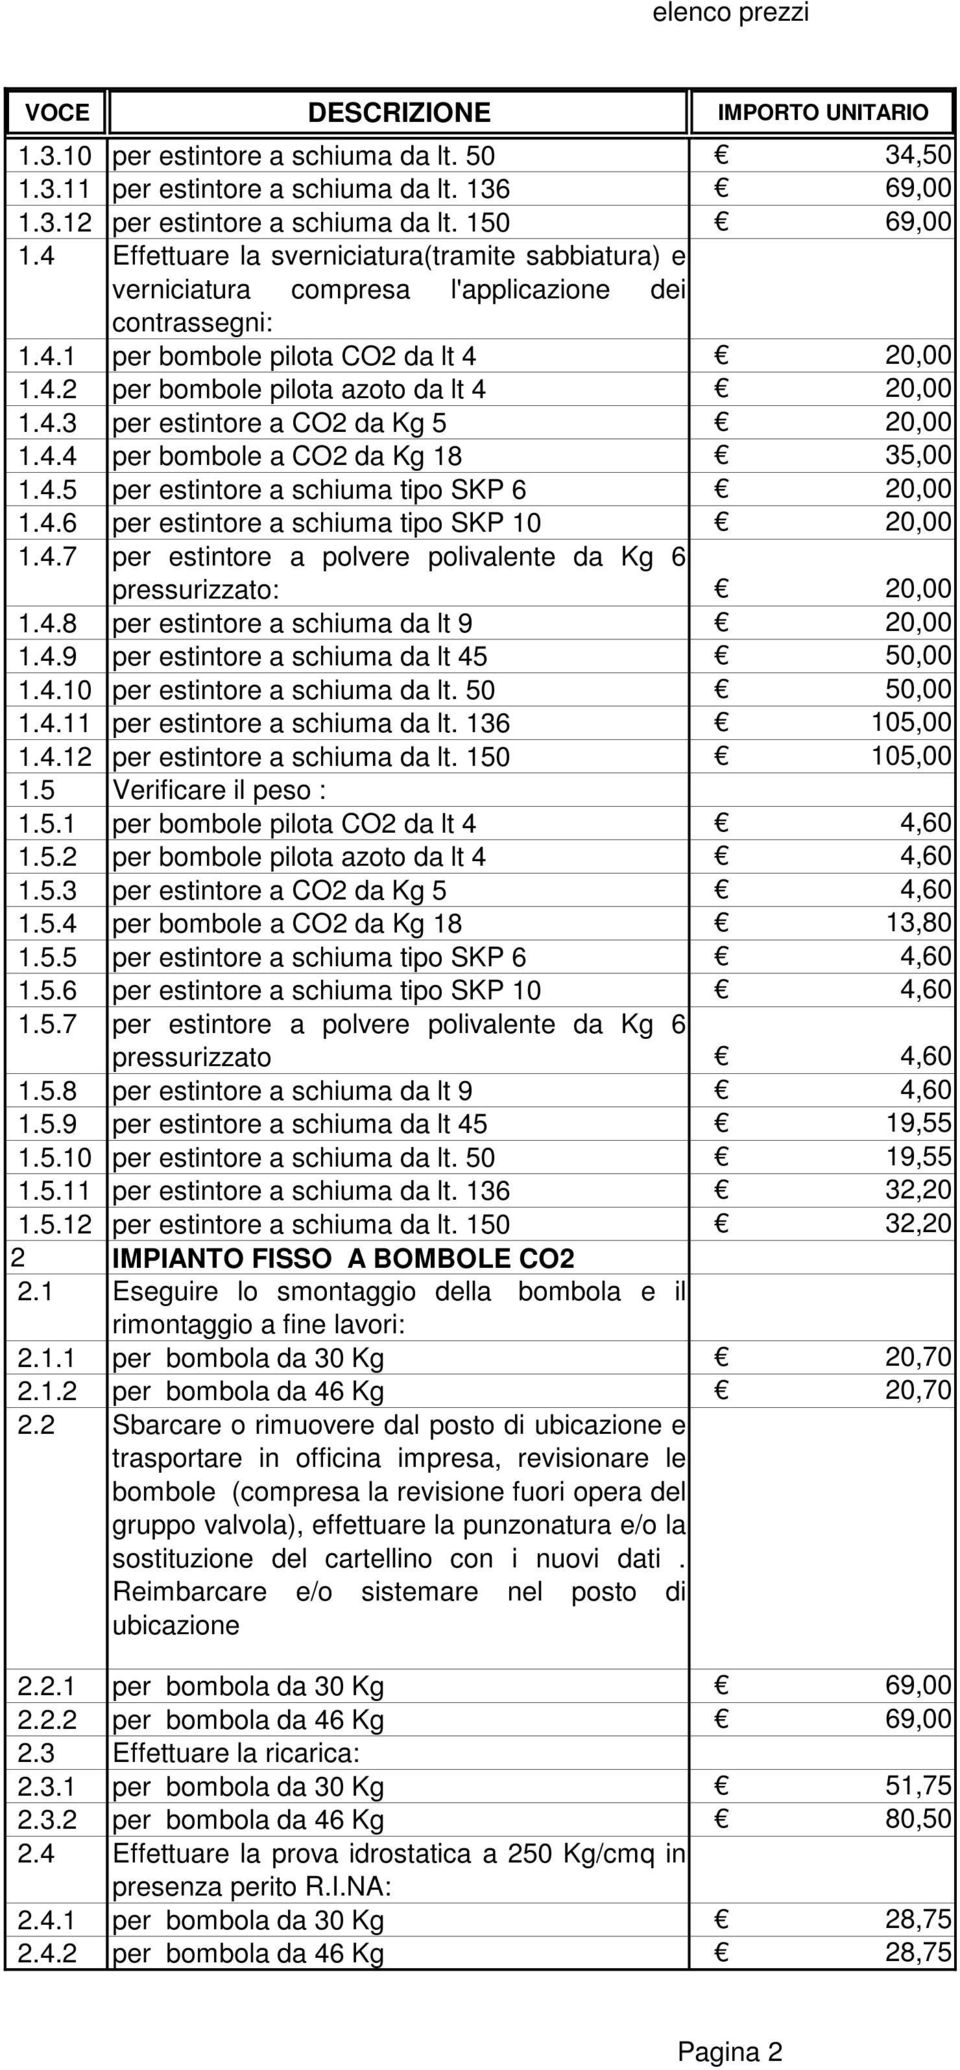 4.4 per bombole a CO2 da Kg 18 35,00 1.4.5 per estintore a schiuma tipo SKP 6 20,00 1.4.6 per estintore a schiuma tipo SKP 10 20,00 1.4.7 per estintore a polvere polivalente da Kg 6 pressurizzato: 20,00 1.